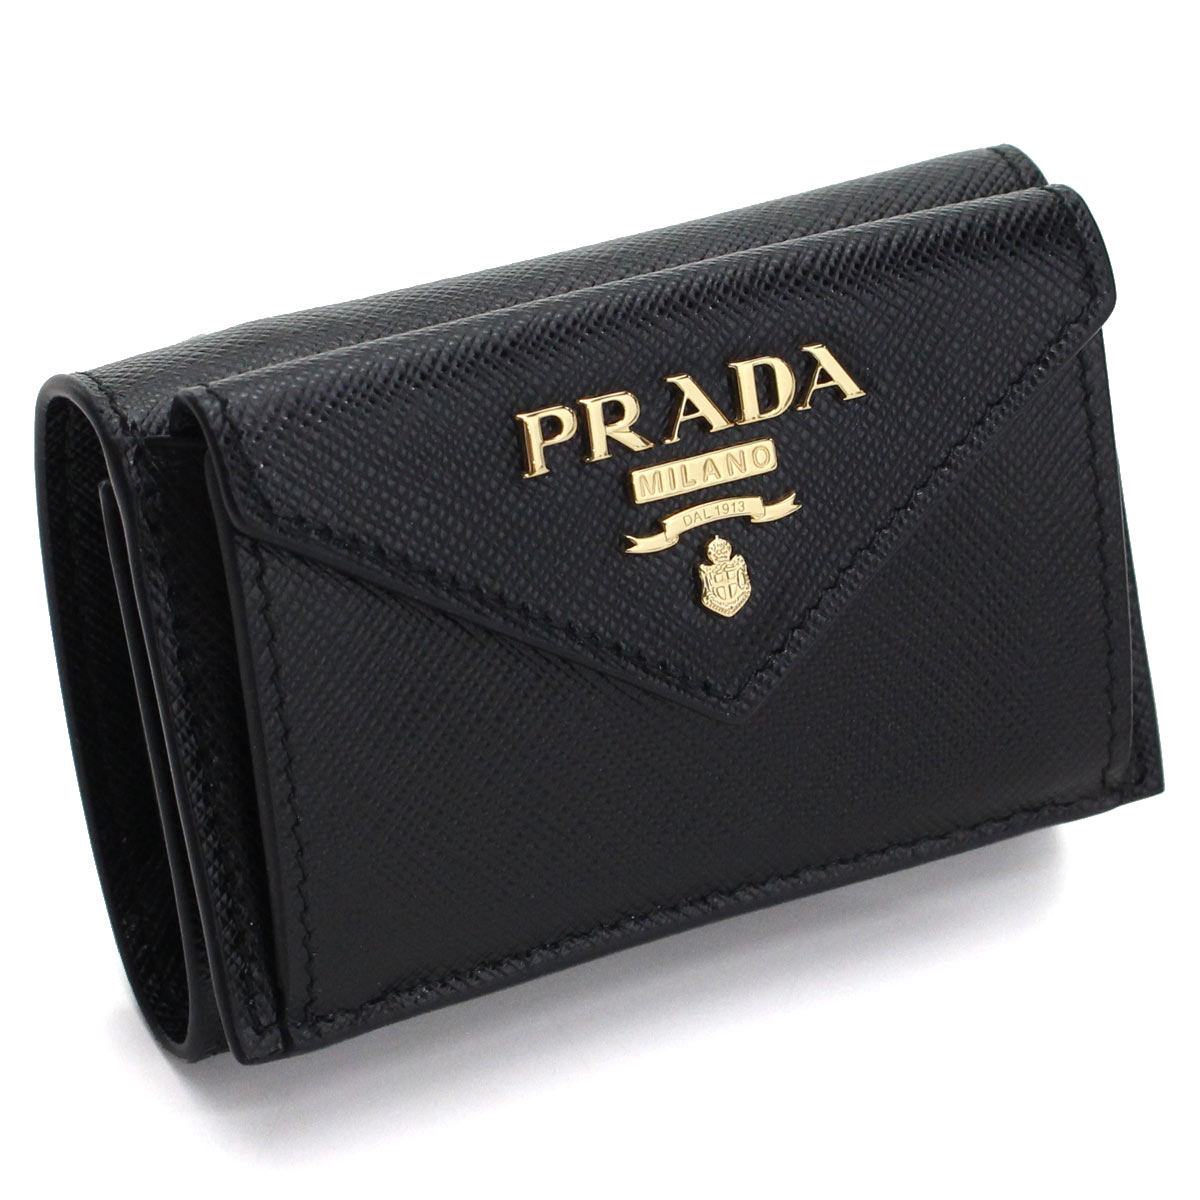 プラダ PRADA サフィアーノ メタル 3つ折り財布 ミニ財布 1MH021 QWA F0002 NERO ブラック